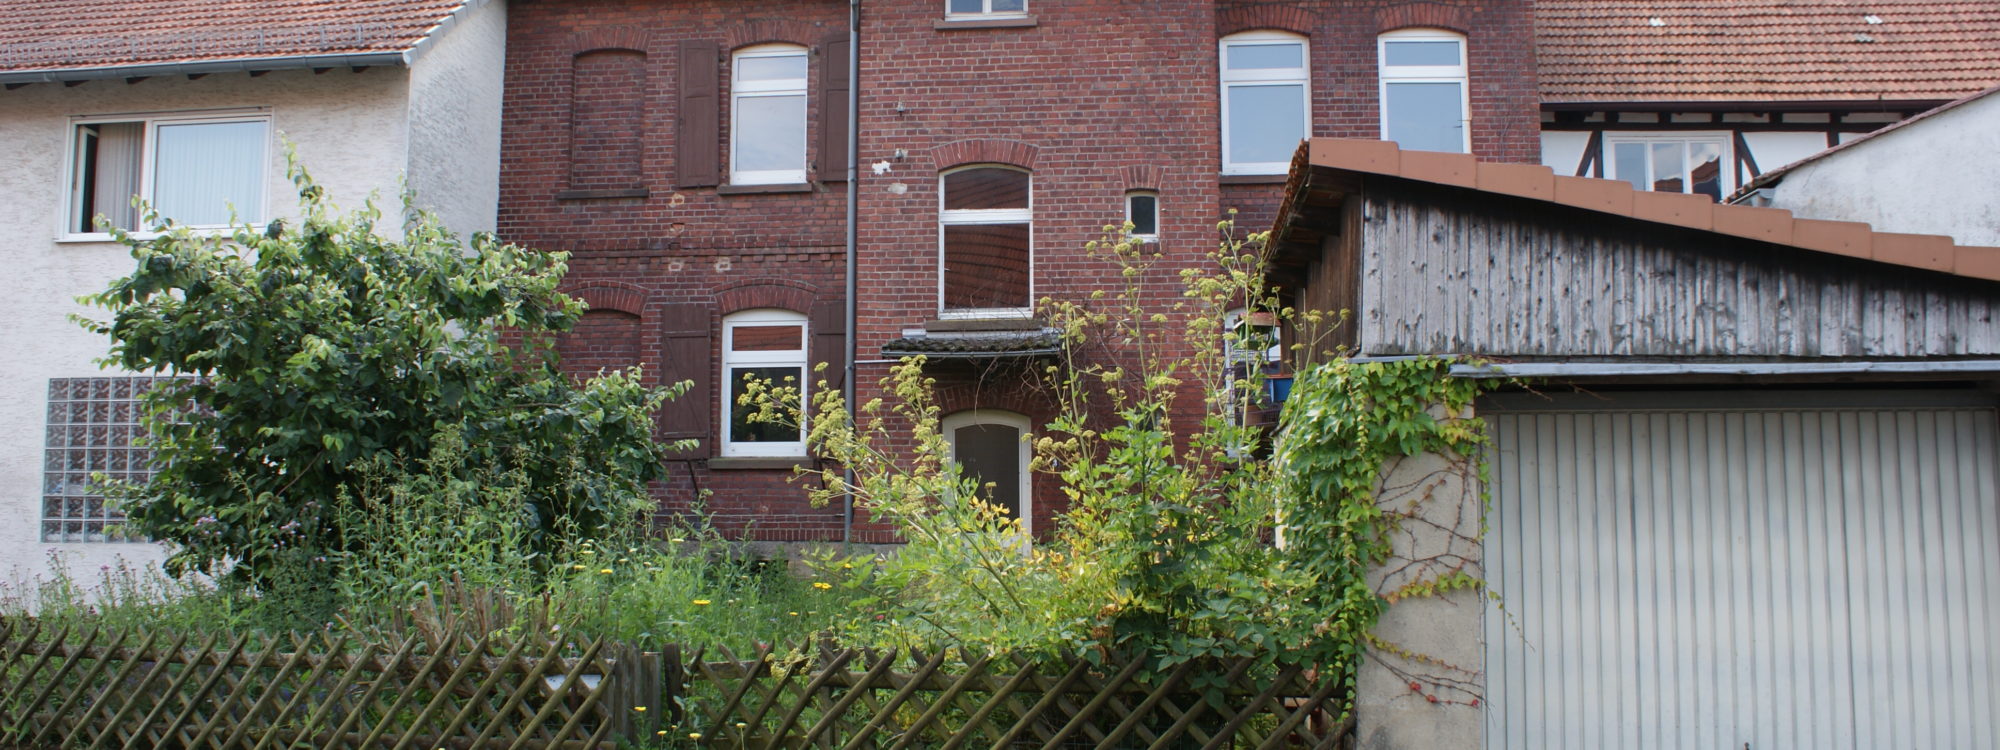 Reserviert! – Zweifamilienhaus mit Garage und Garten, zentrale Lage